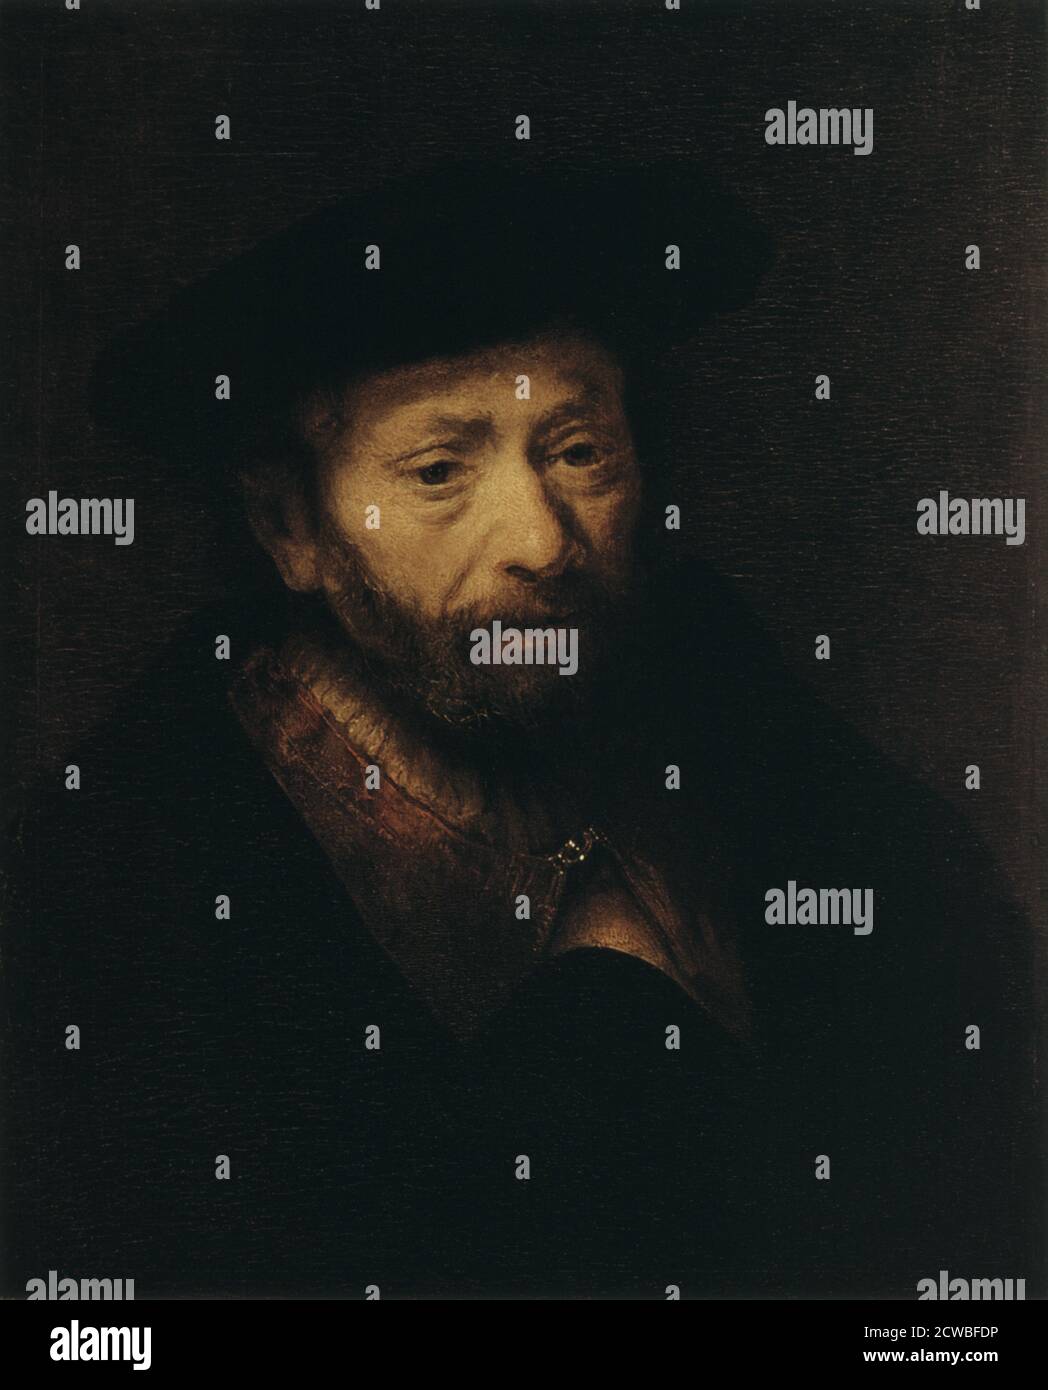 Ritratto di un vecchio uomo ', 17 ° secolo da Rembrandt Harmensz van Rijn. Dal Museo dell'Hermitage, San Pietroburgo, Russia. Foto Stock